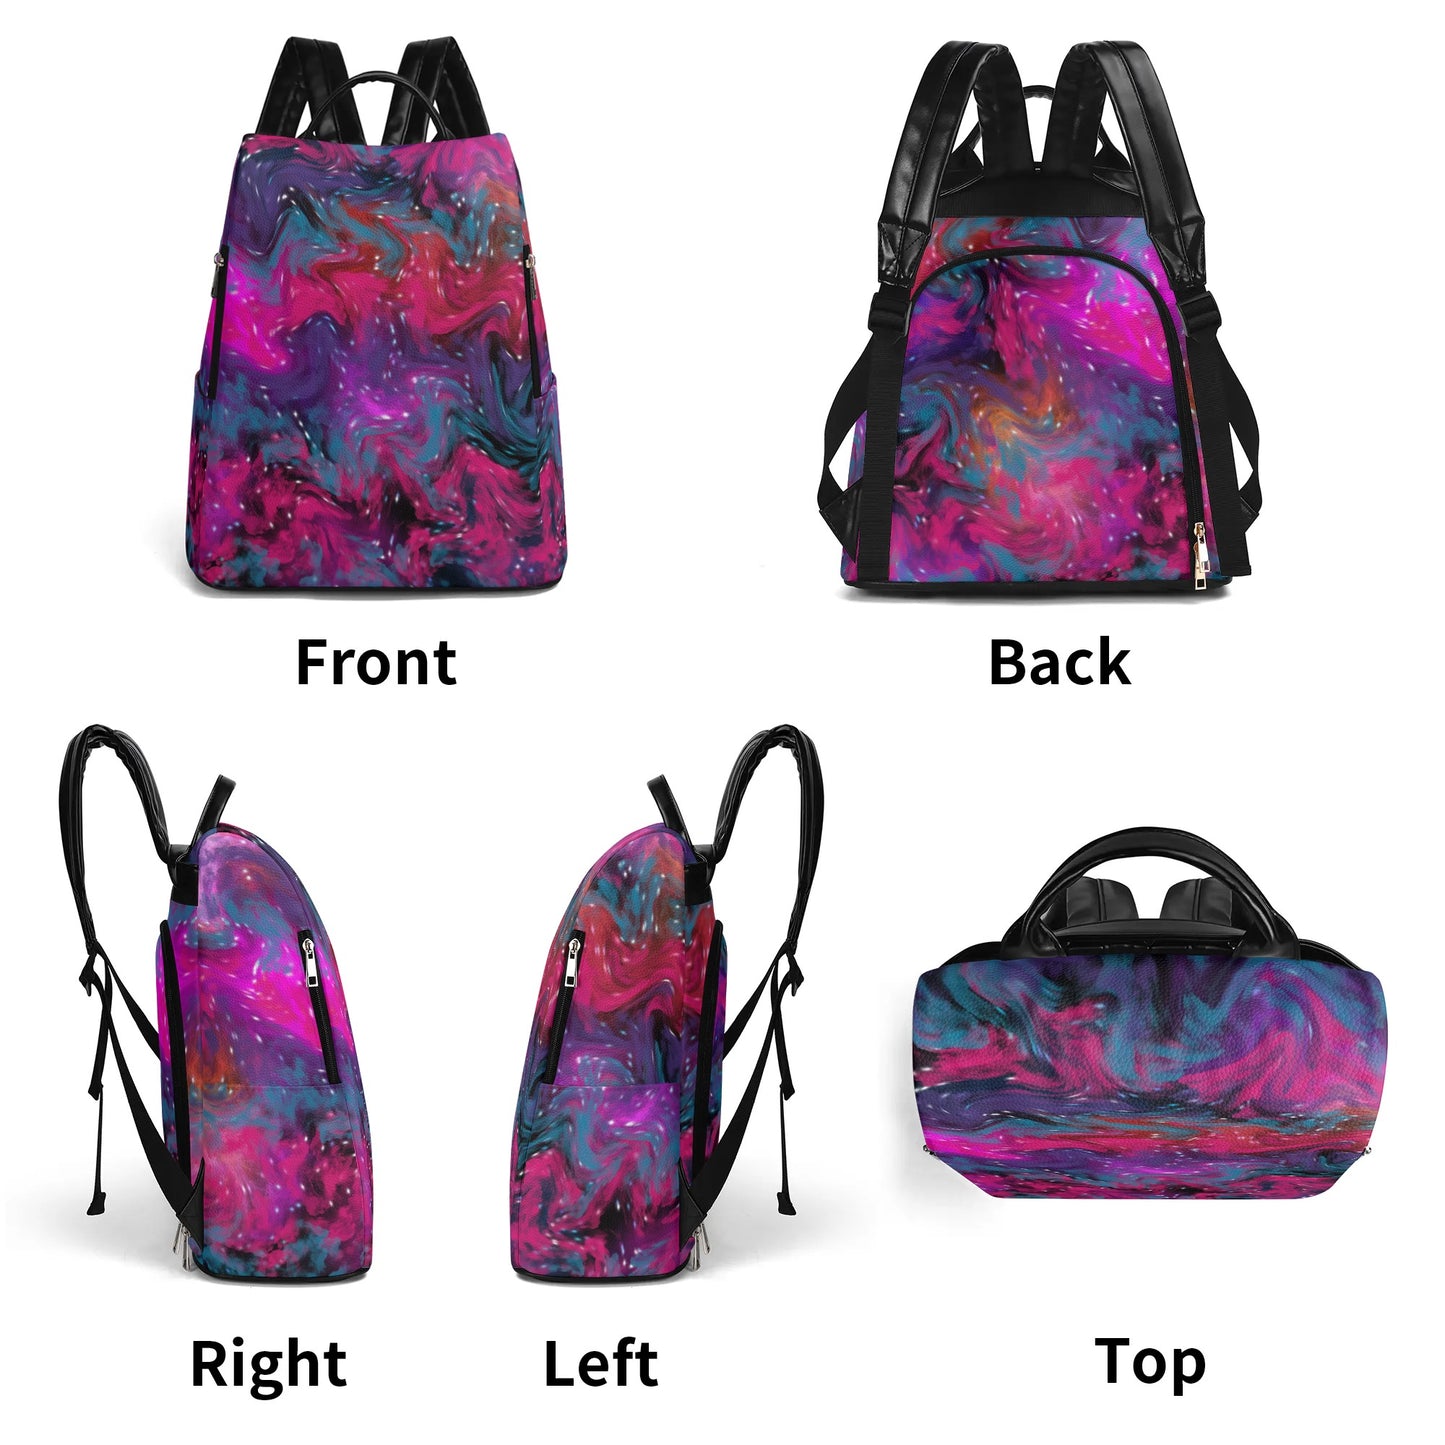 Nebular Anti-theft Backpack